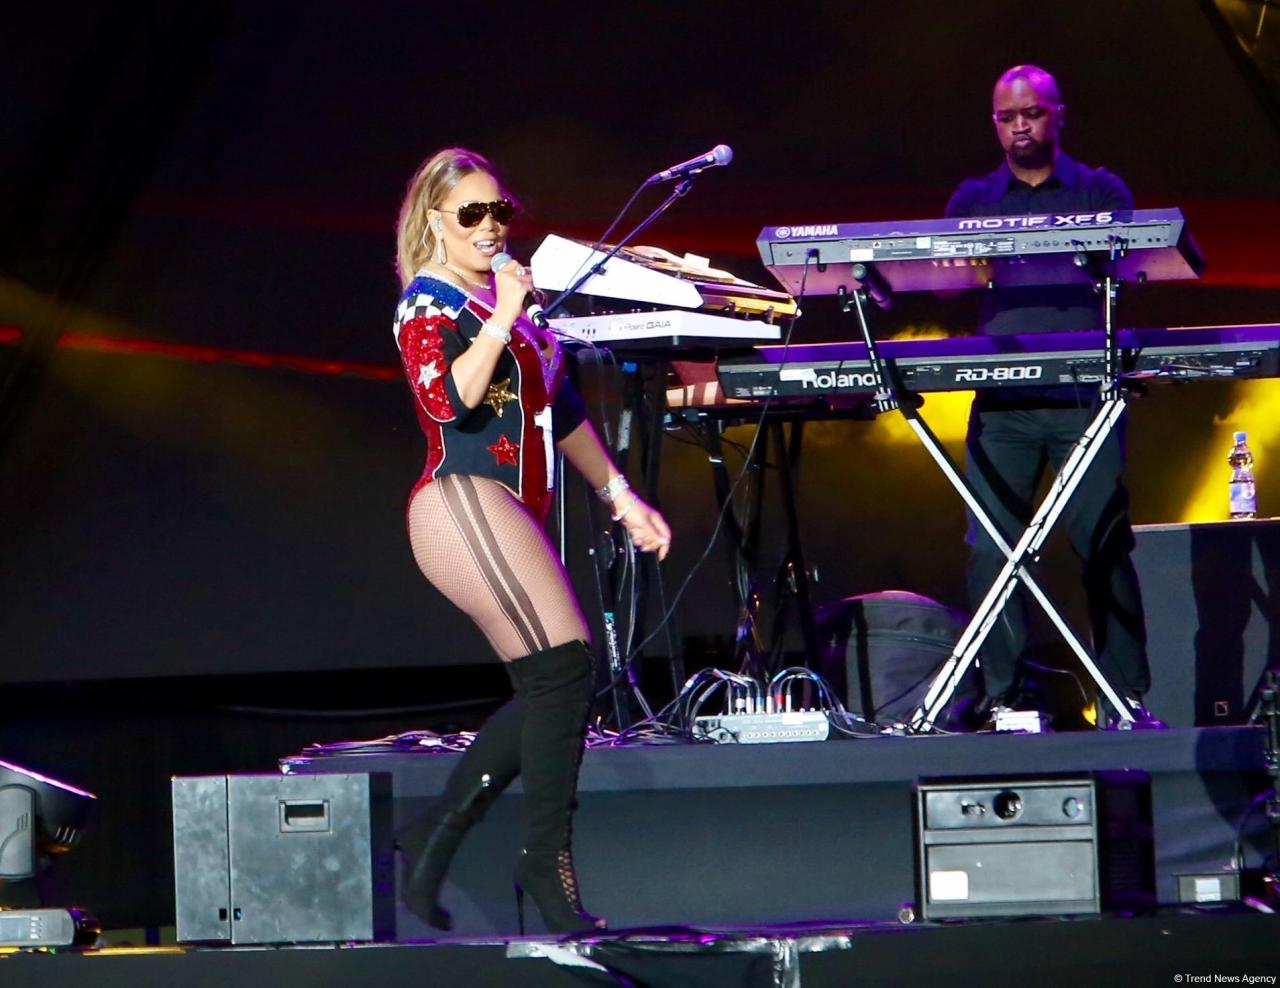 Mariah Carey's concert held in Baku [PHOTO]